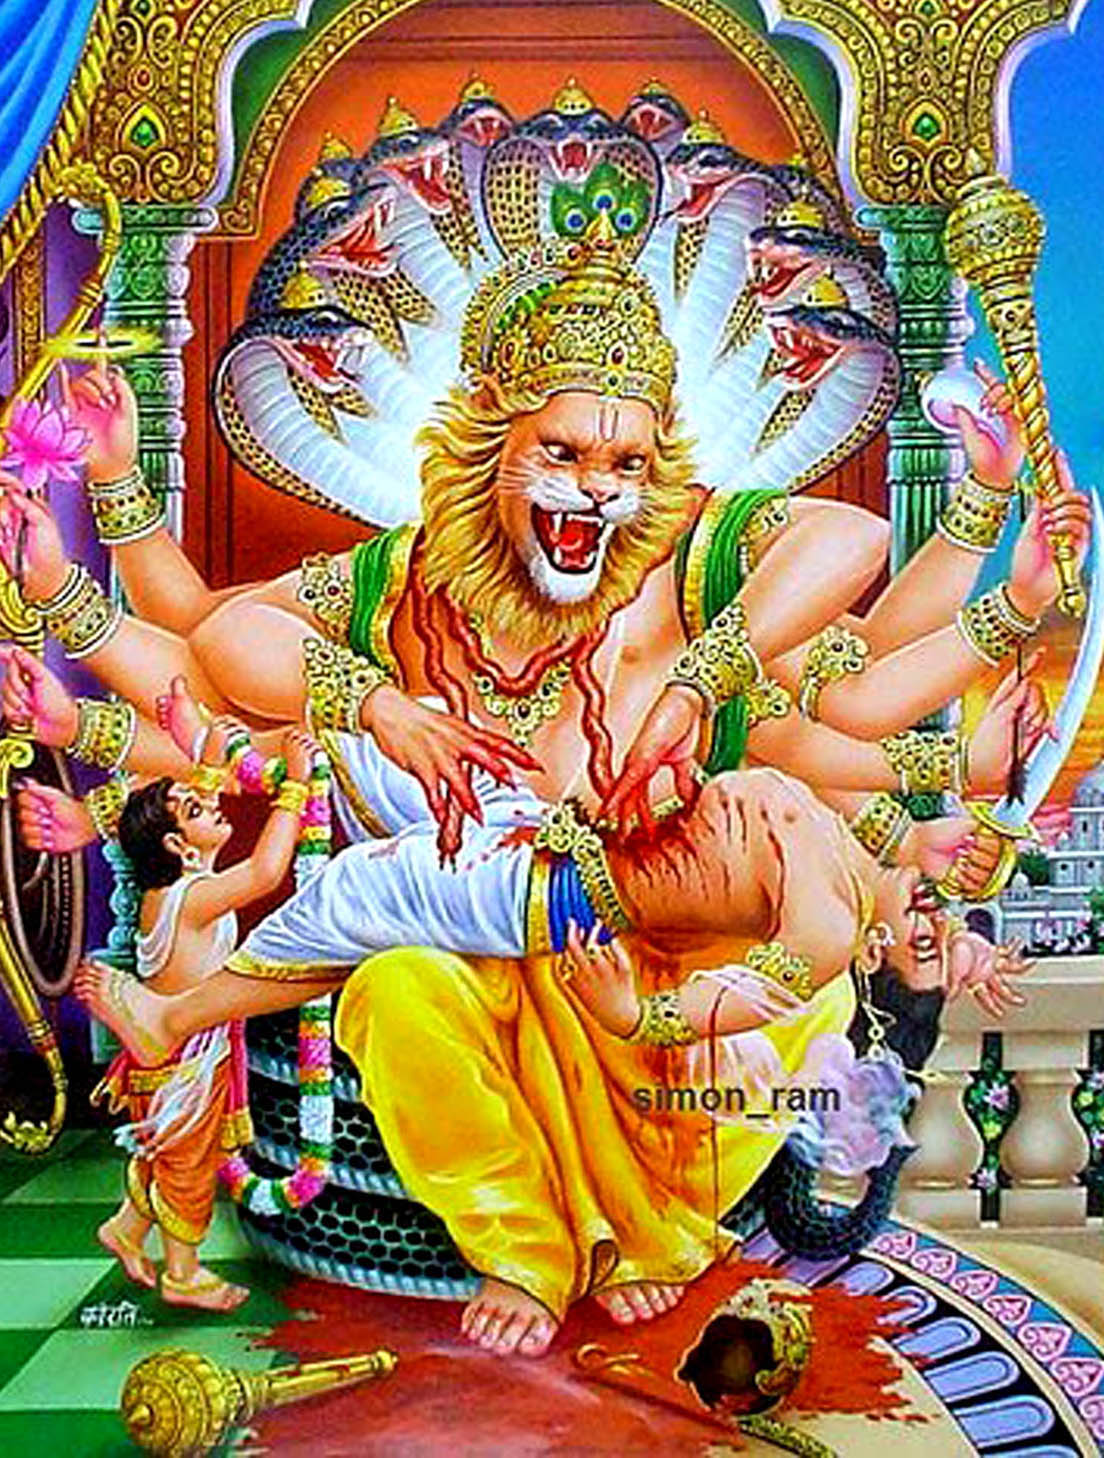  इस जिले के अधिष्ठाता भगवान नरसिंह की जयंती आज धूमधाम से मनाई जाएगी। गौरतलब है कि यह शहर भगवान नरसिंह के नाम पर बसा है। 